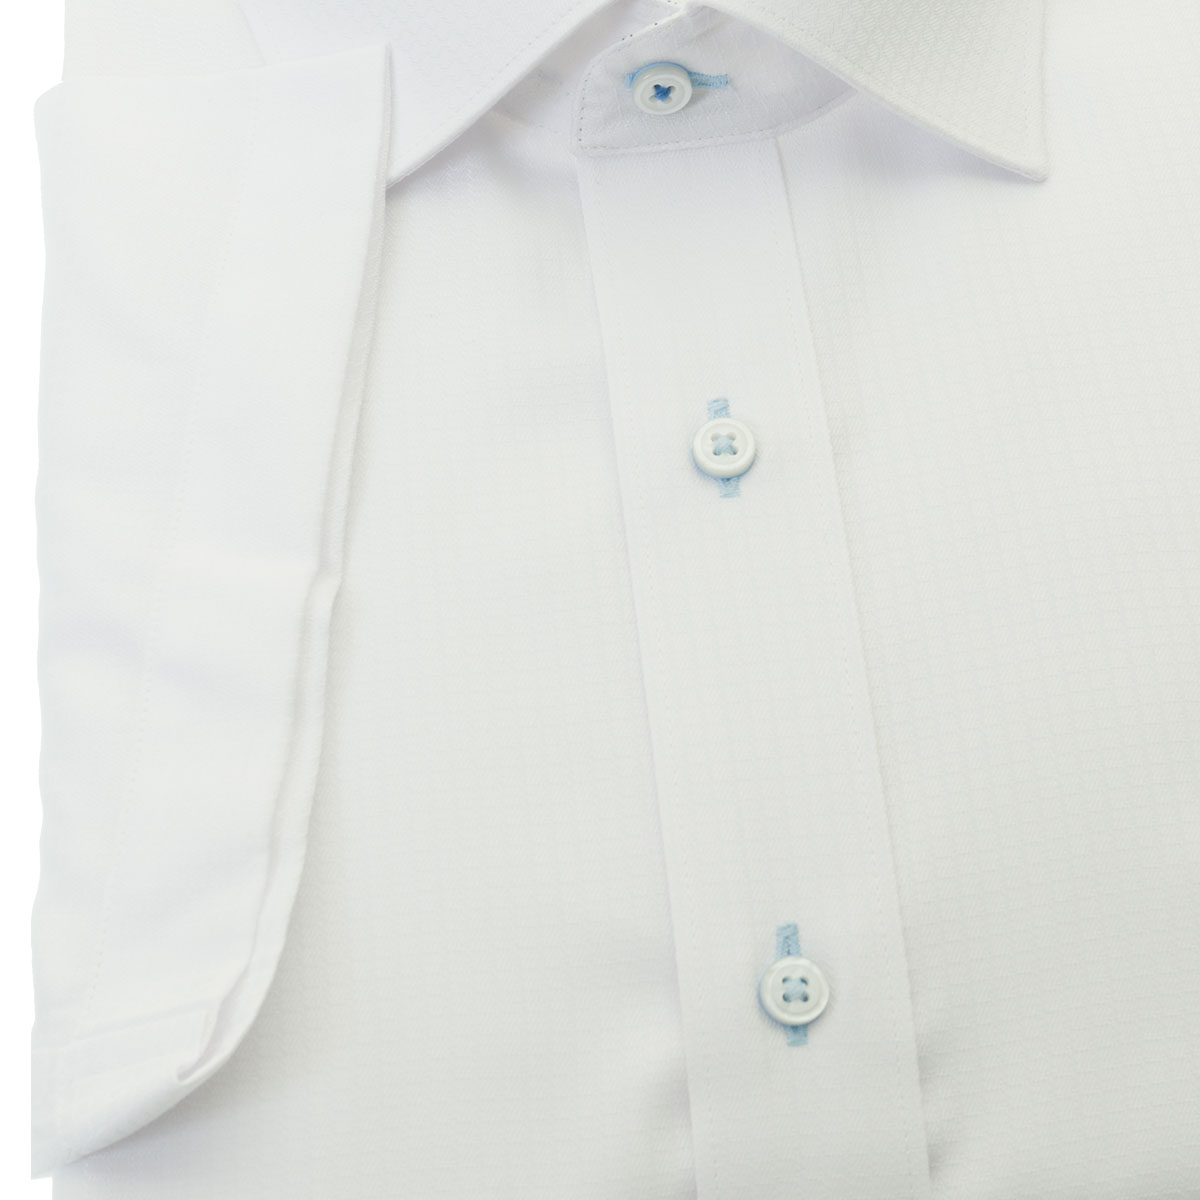 SHIRT HOUSE・ブルーレーベル 半袖 ワイドカラー ホワイト ワイシャツ